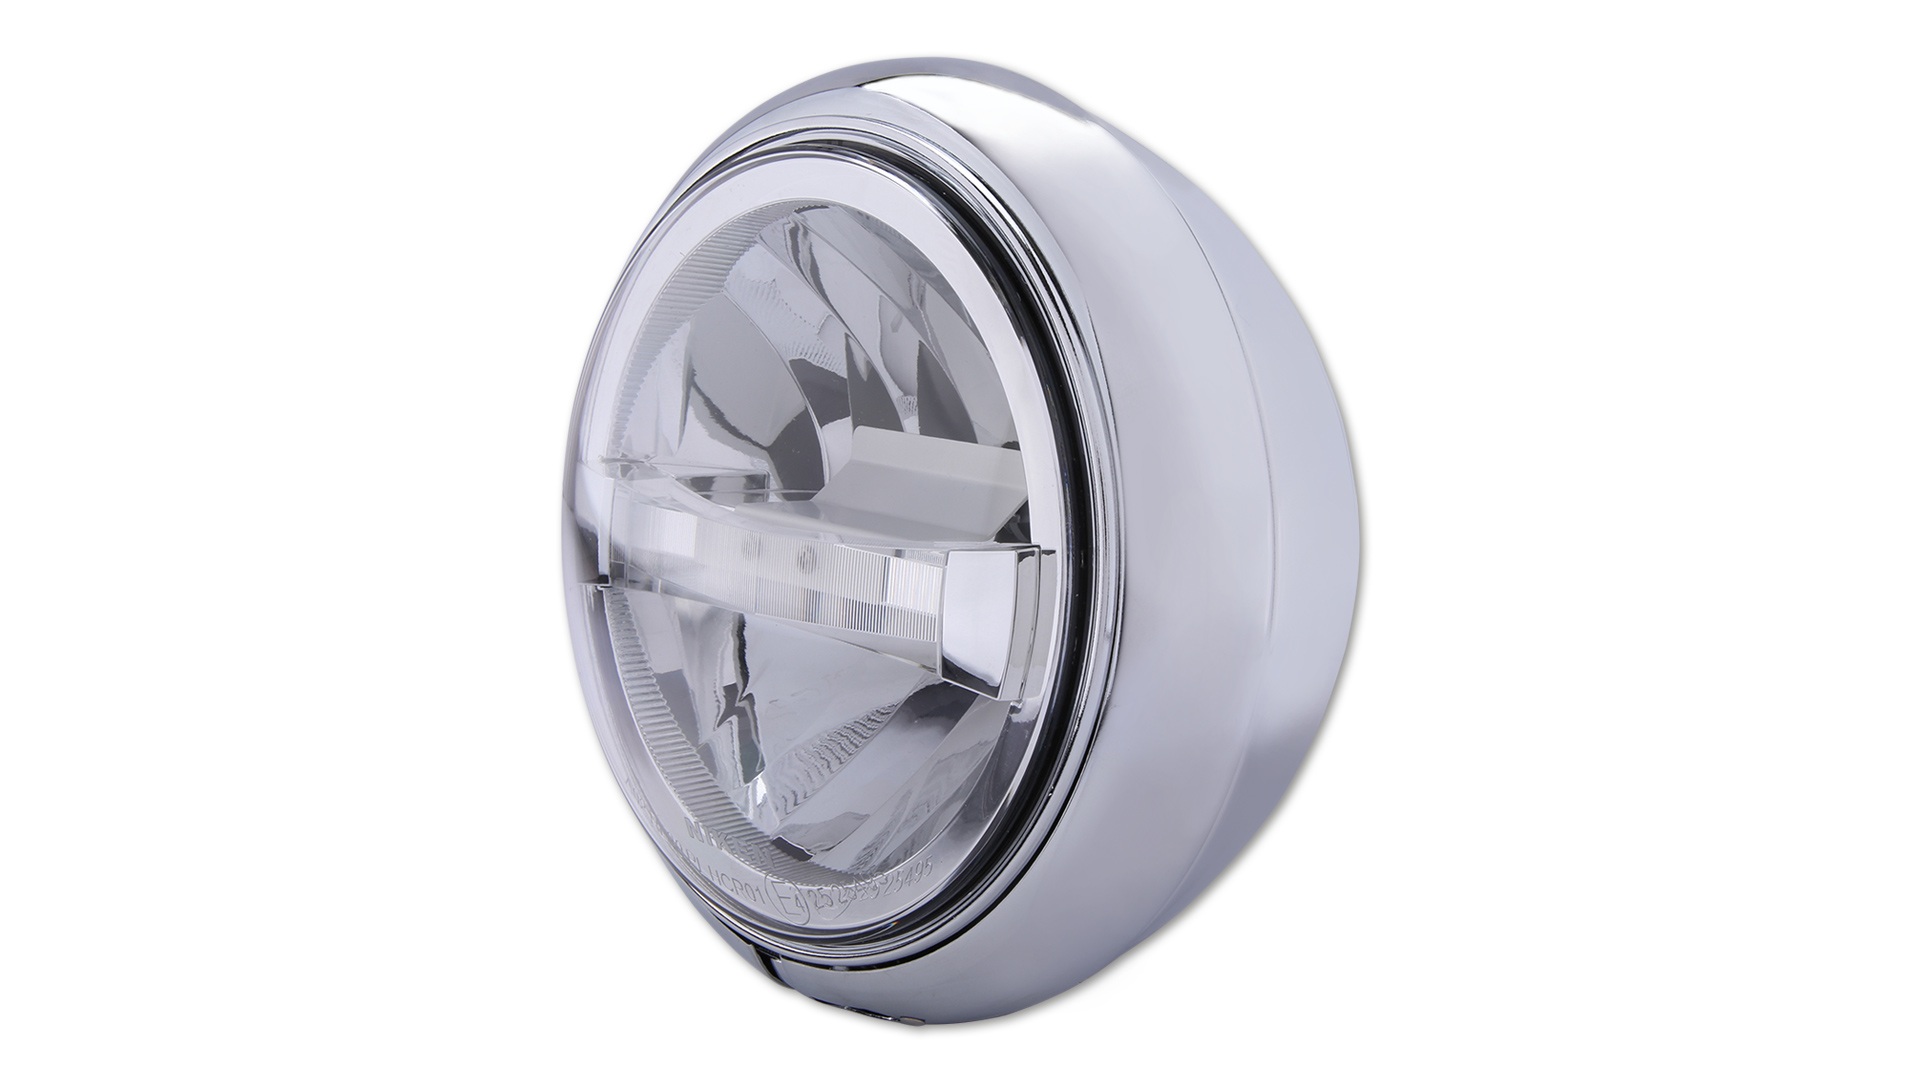 7 Zoll LED-Scheinwerfer HD-STYLE TYP 4 mit TFL, Metallgehäuse, klares Glas, rund, untere Befestigung, E-geprüft.